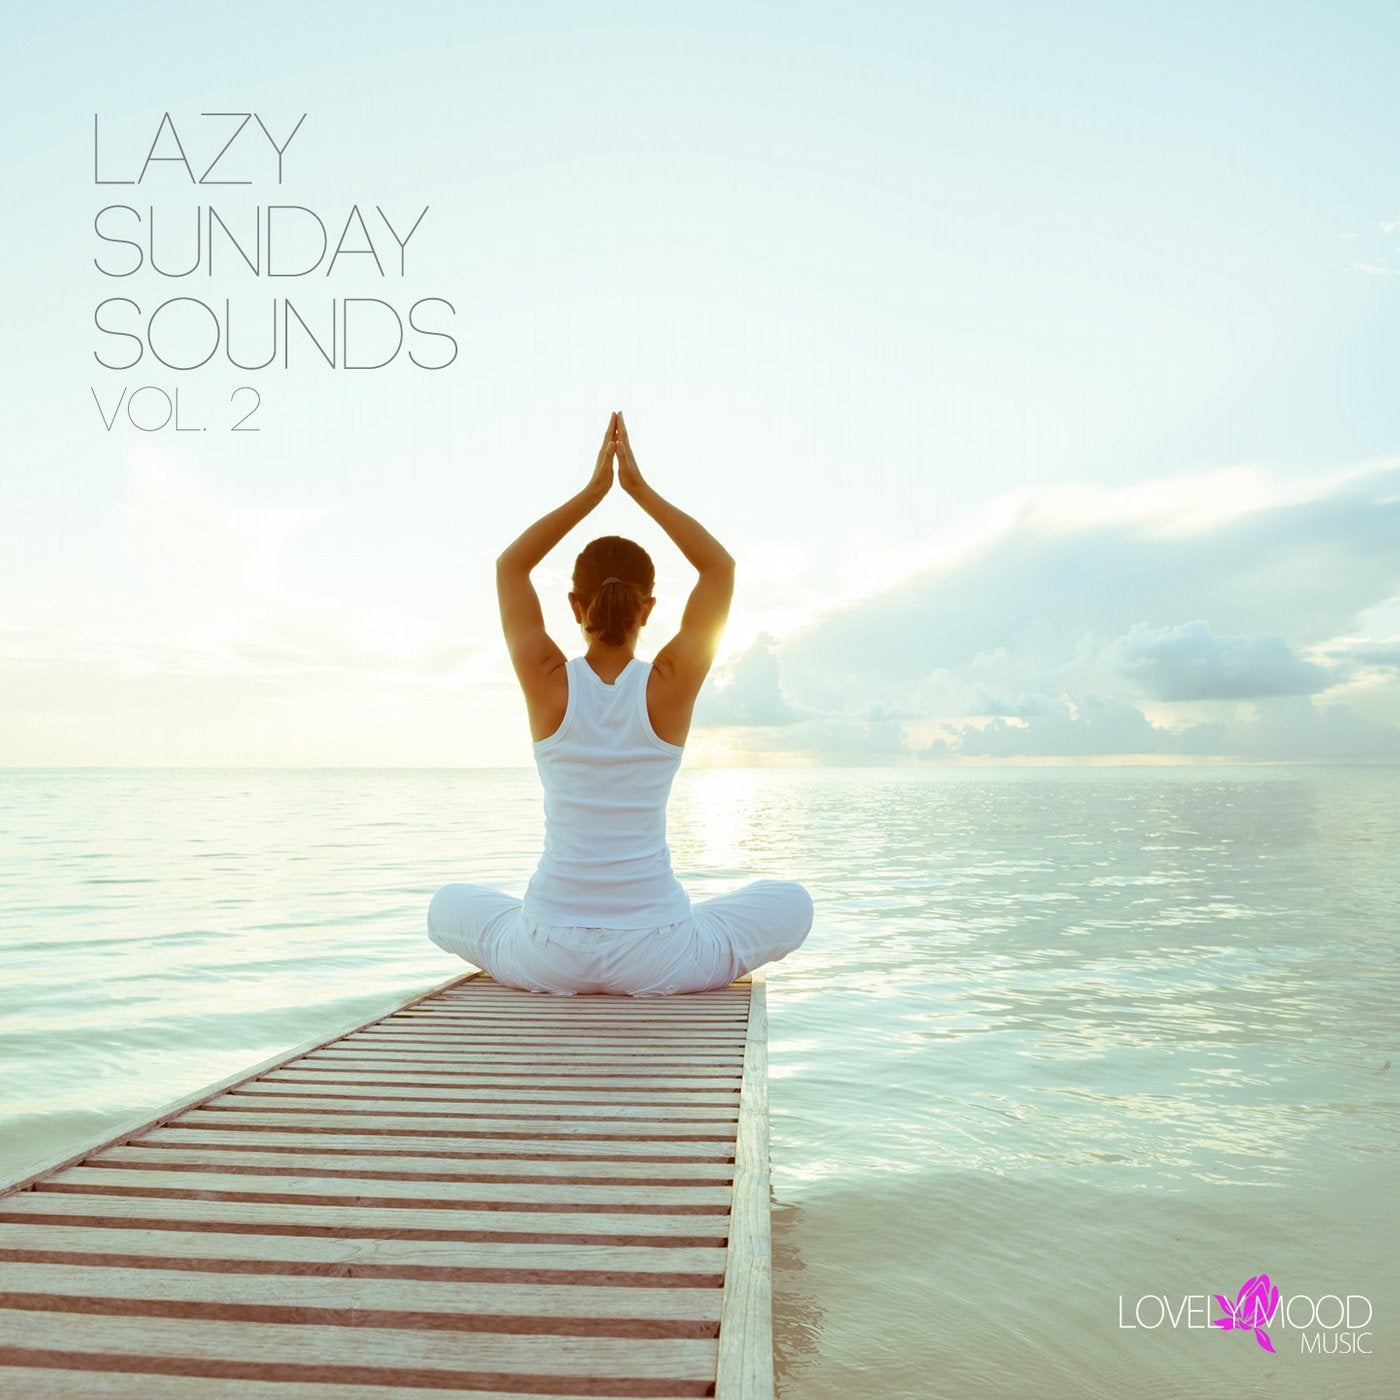 Lazy Sunday Sounds Vol. 2